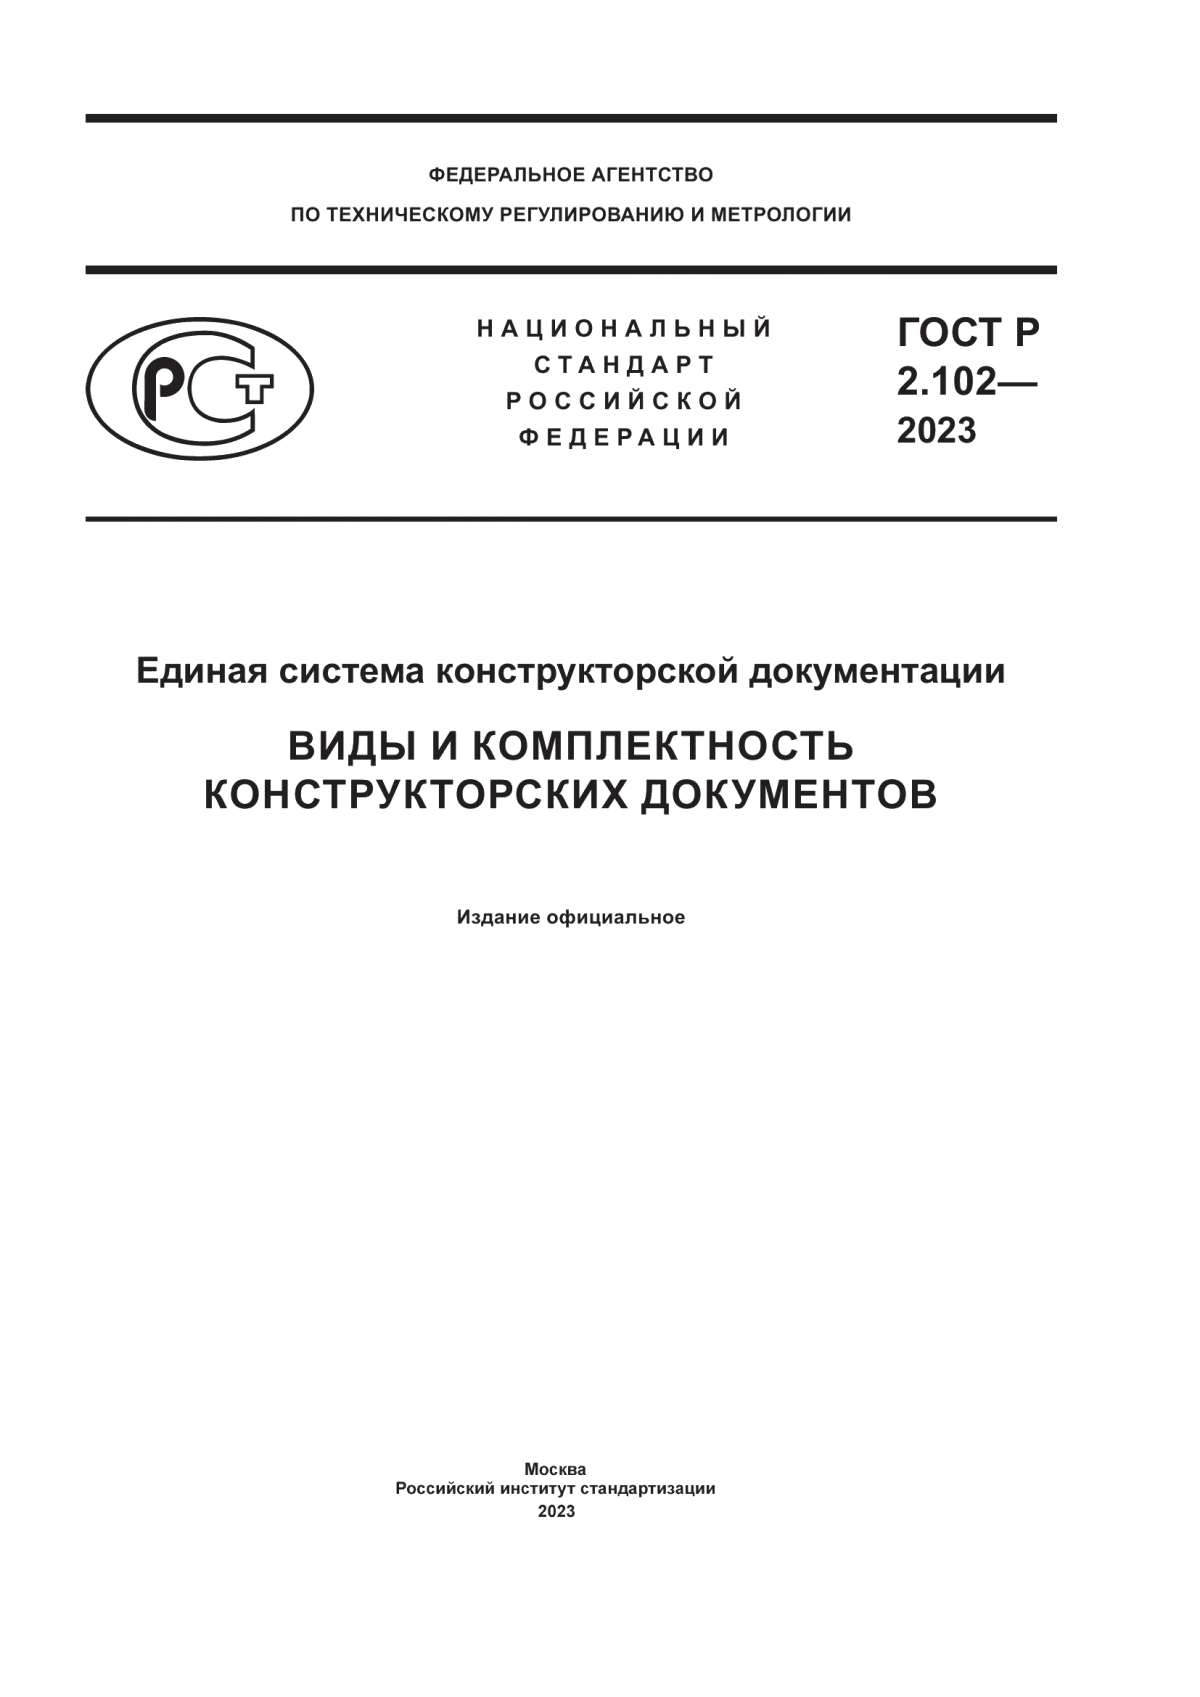 ГОСТ Р 2.102-2023 Единая система конструкторской документации. Виды и комплектность конструкторских документов